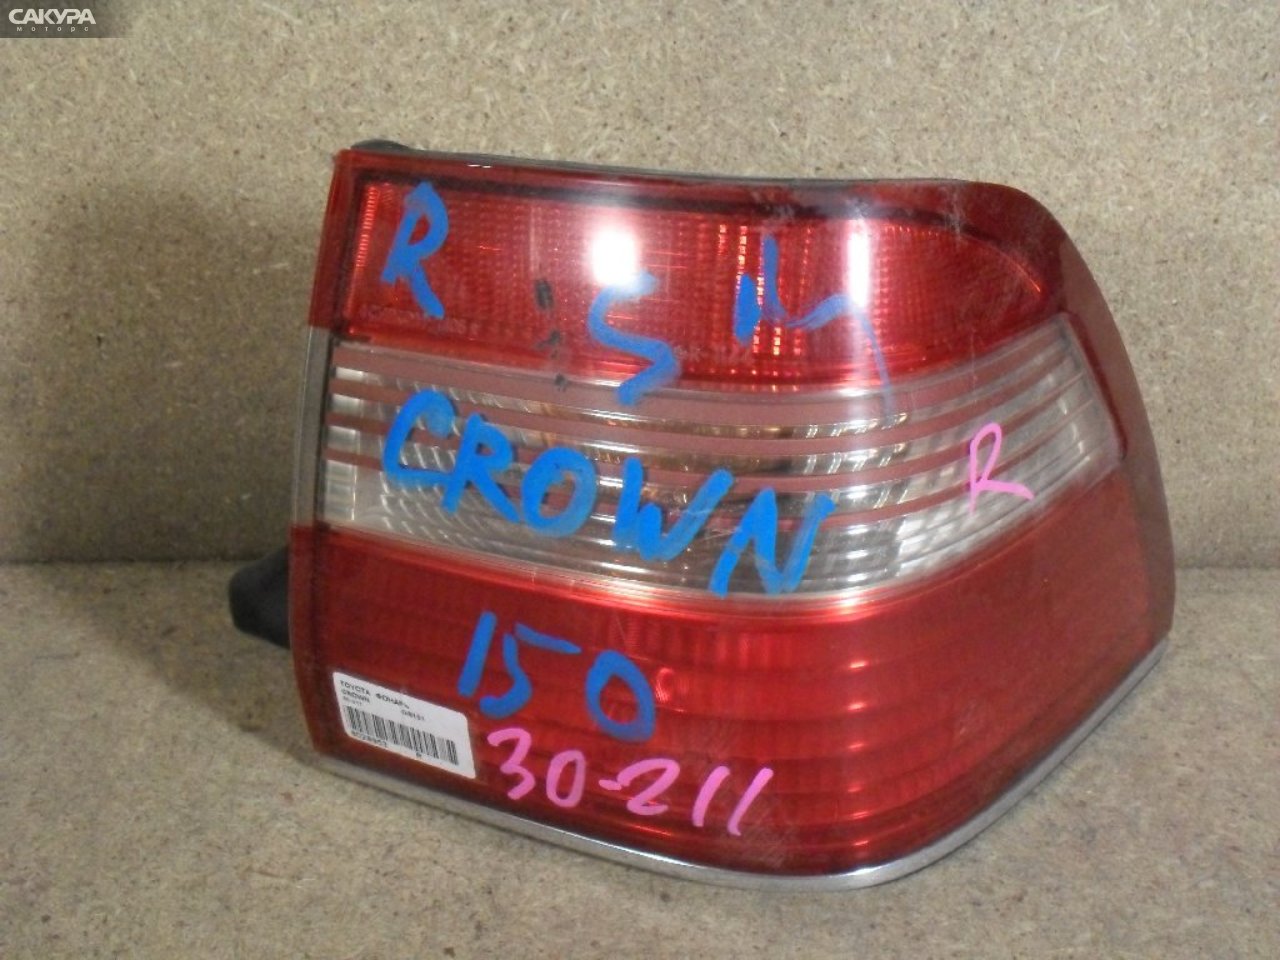 Фонарь стоп-сигнала правый Toyota Crown GS151 30-211: купить в Сакура Абакан.